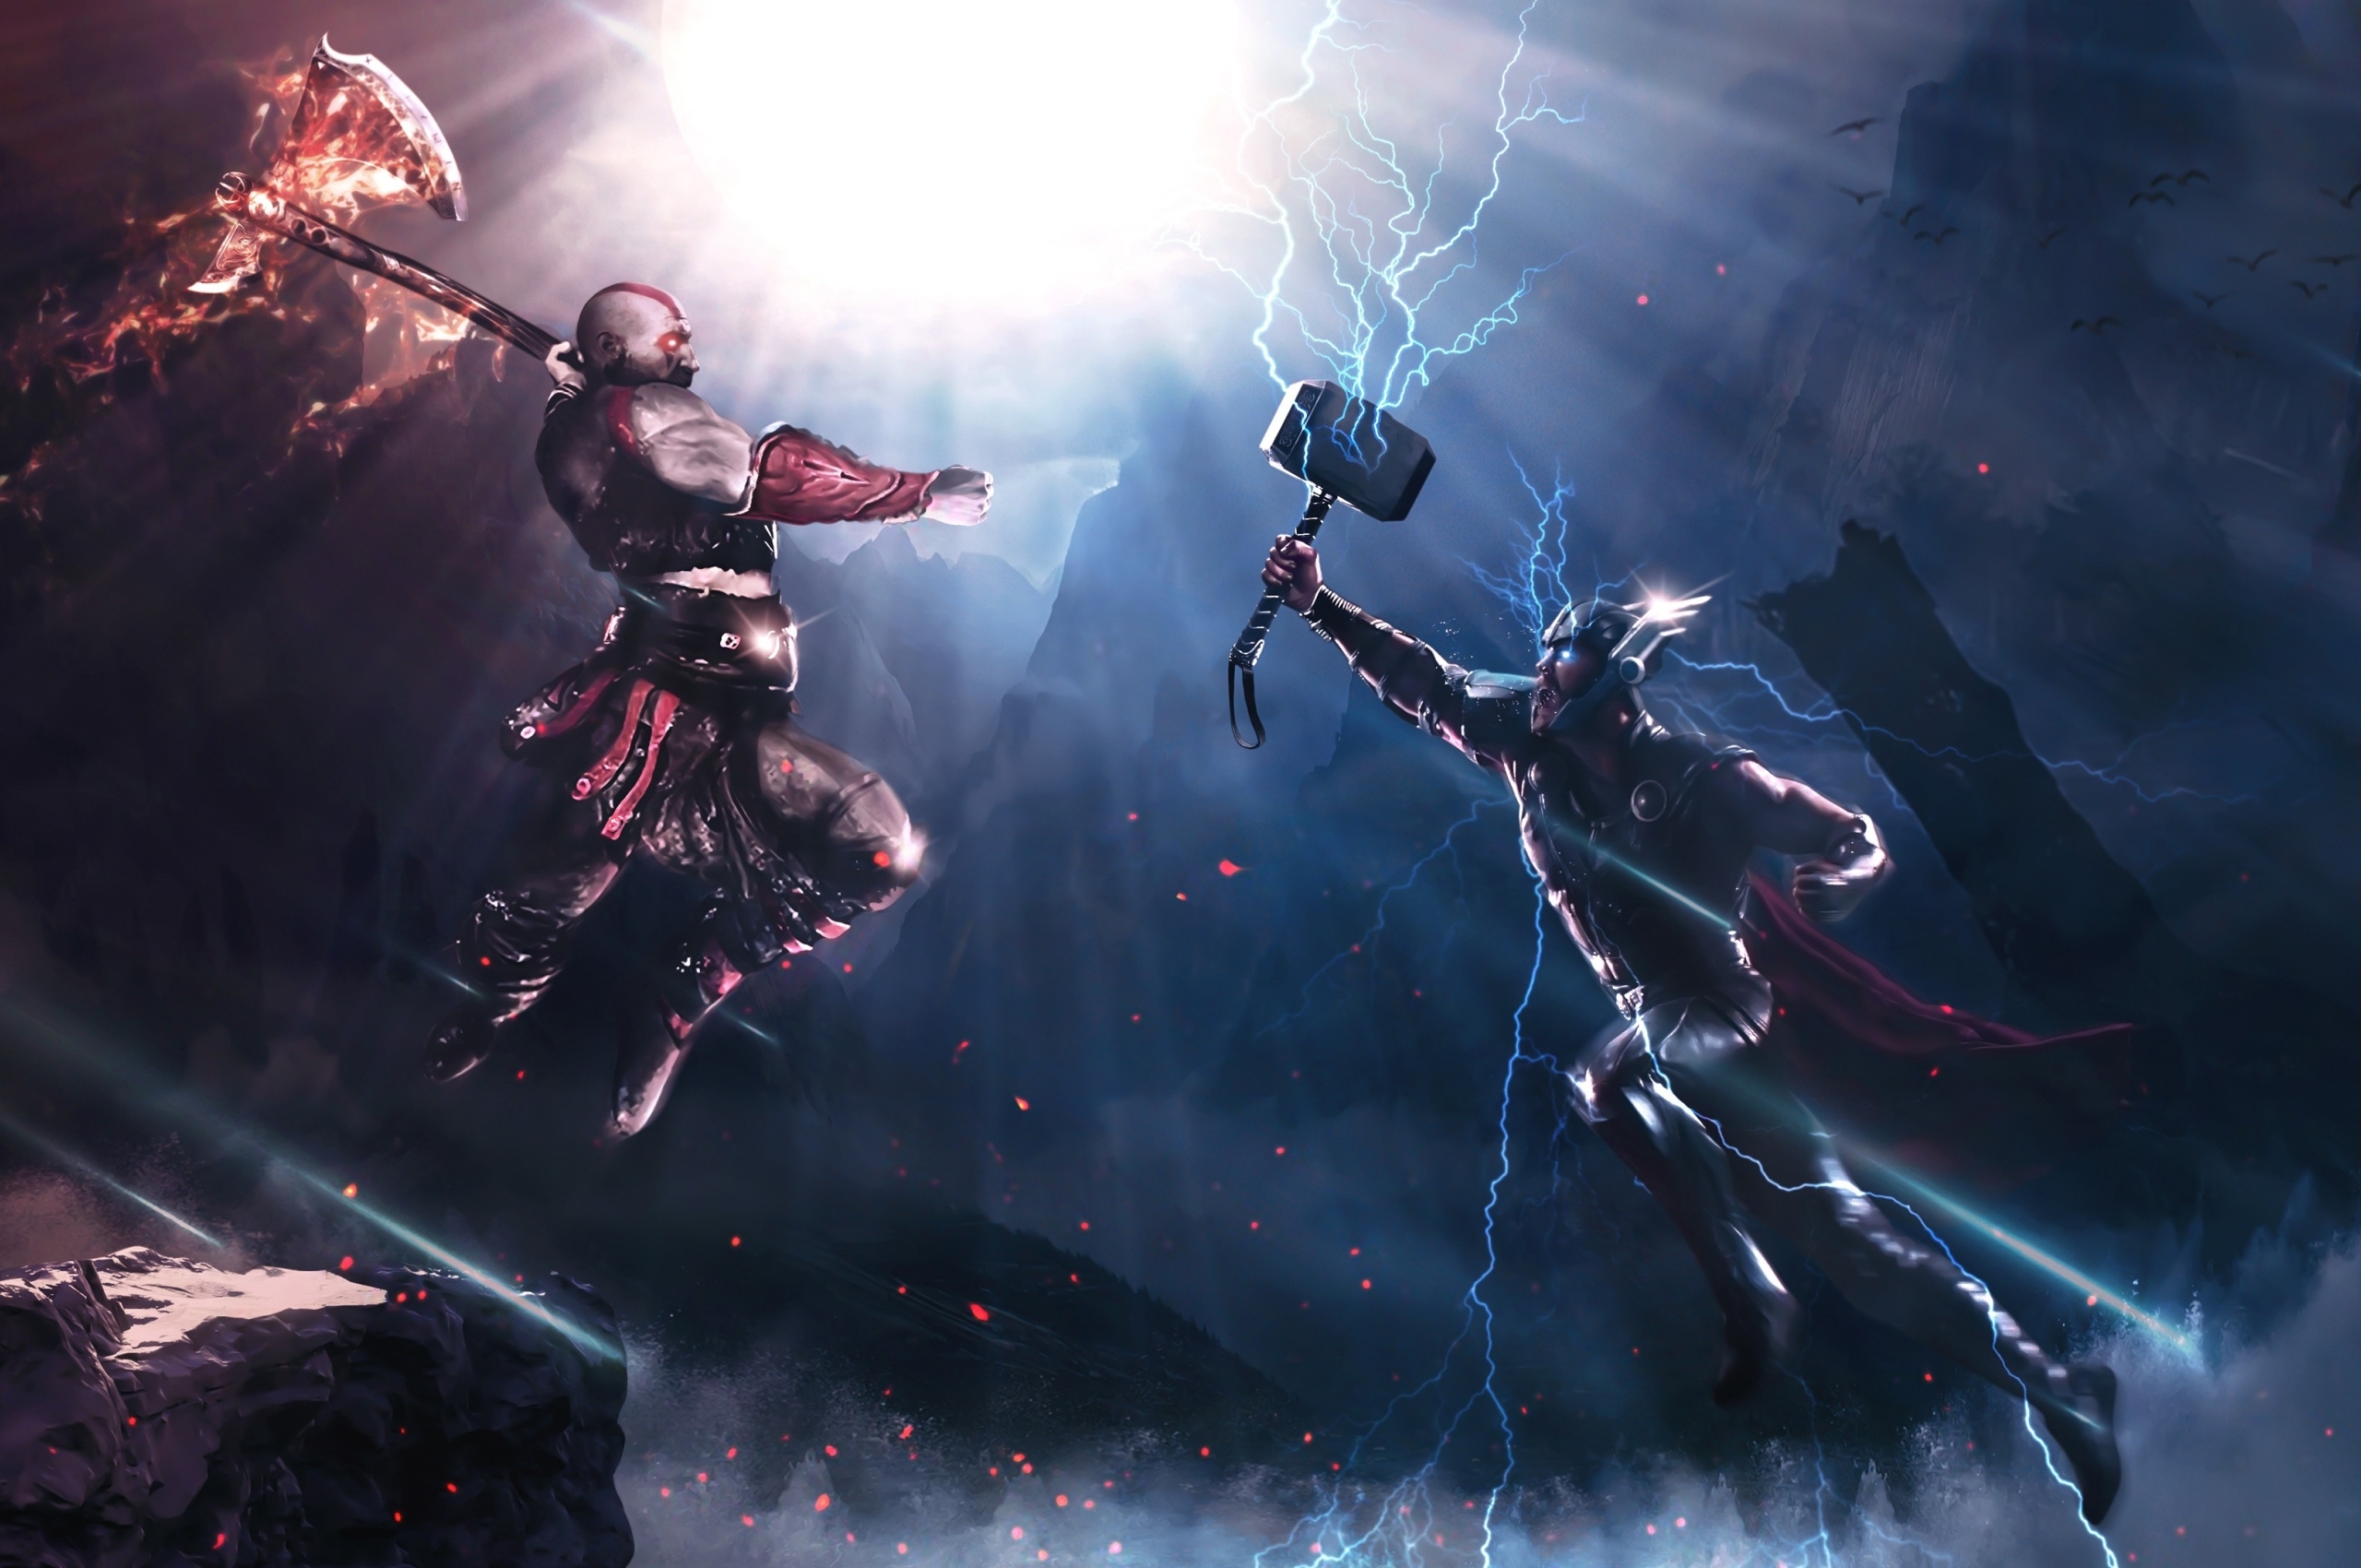 Wallpaper Crossover, Kratos Vs Thor, Axe, Lightning, Fight:3840x2160